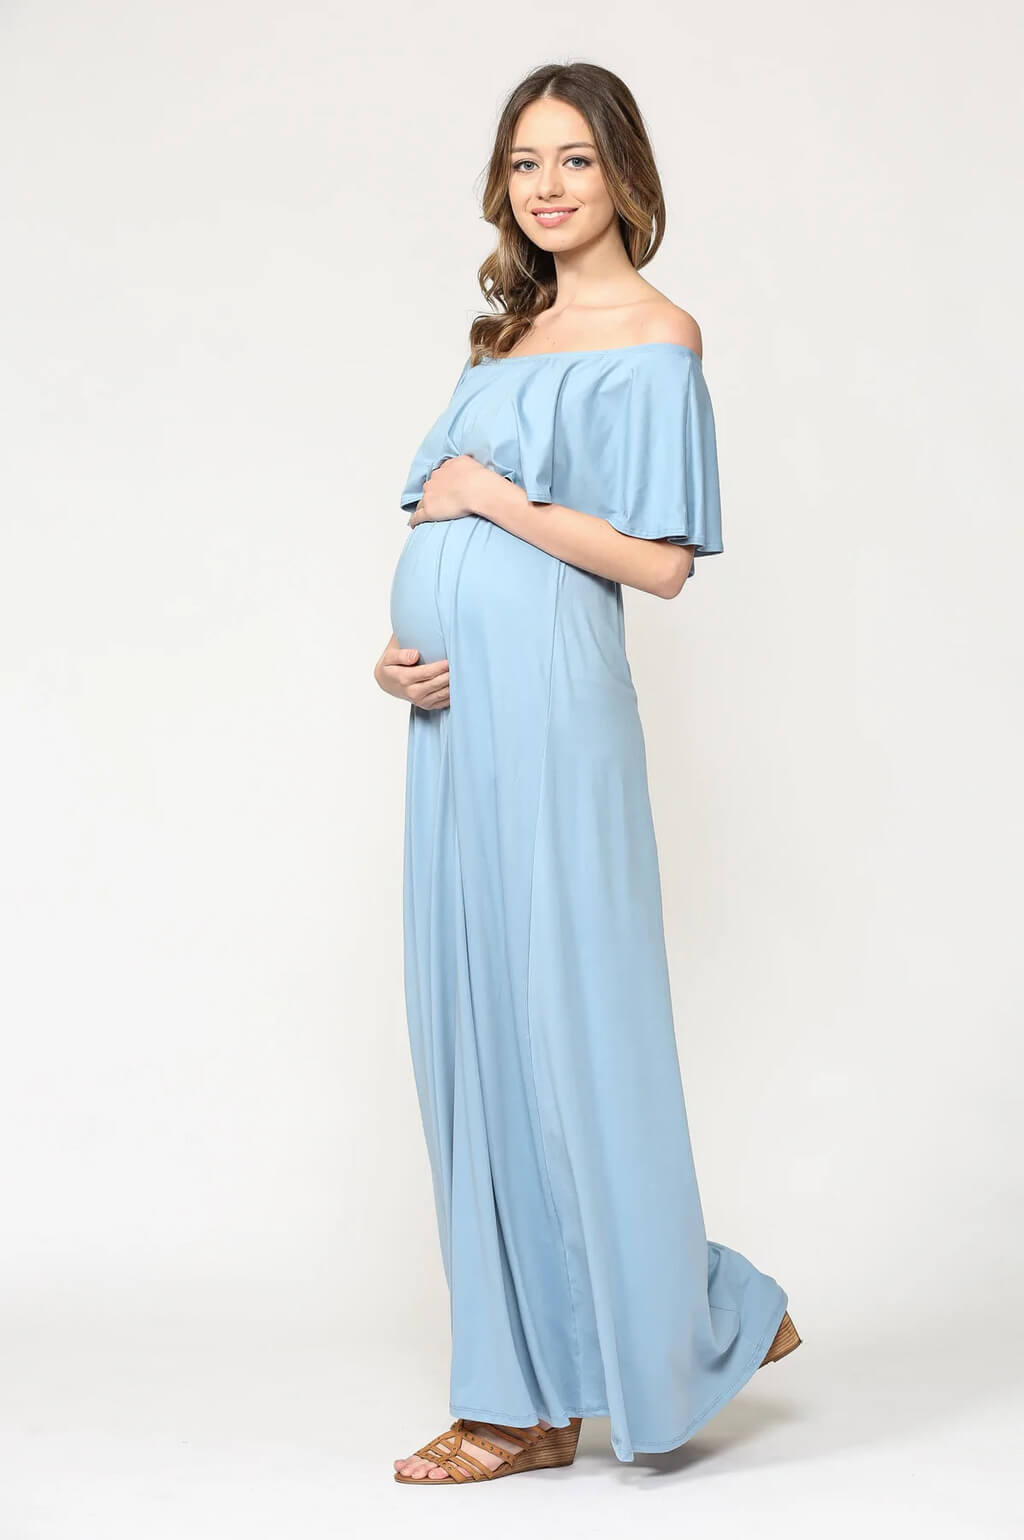 HELLO MIZ Women's Maternity Short Sleeve Knee Length Wrap Dress for Baby Shower 